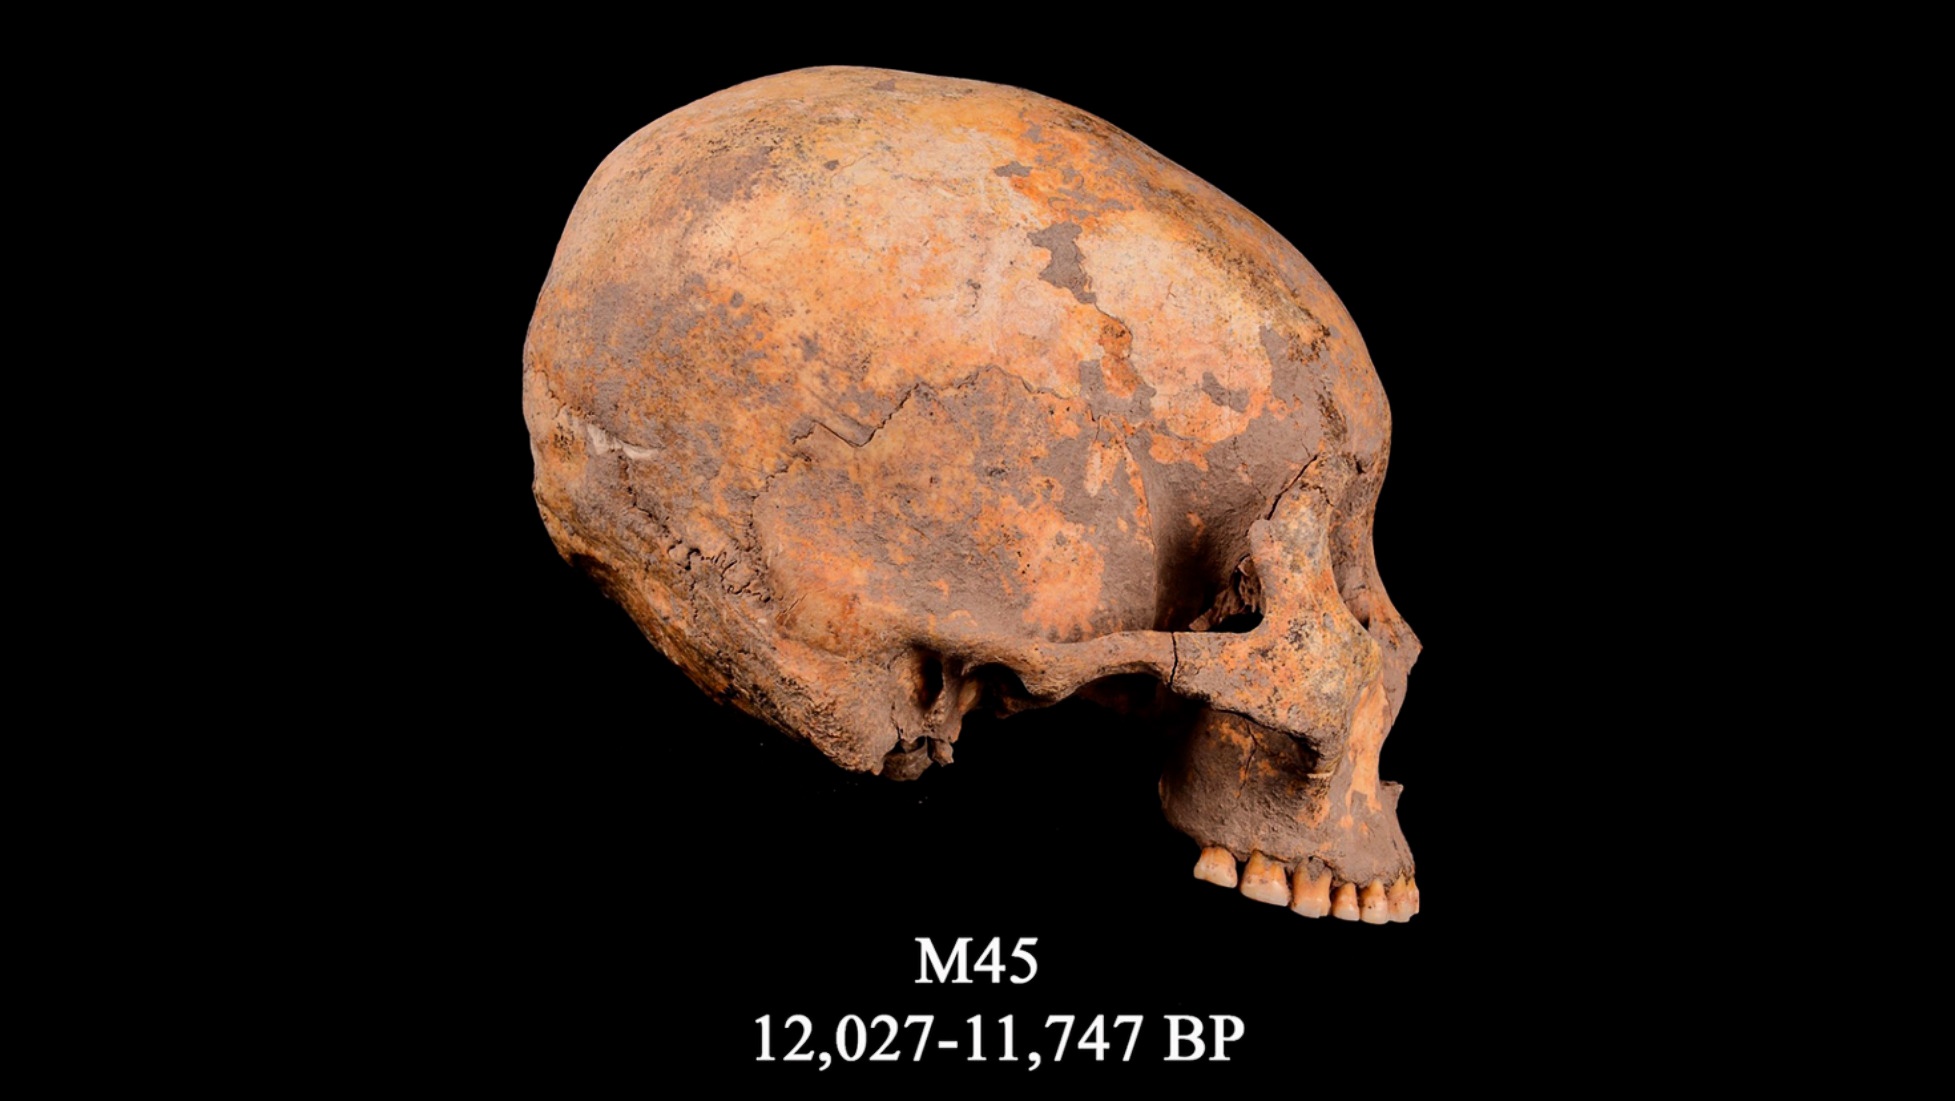 Лобања позната као М45, најранији познати случај модификације главе забележен. Датира пре око 12,000 година.